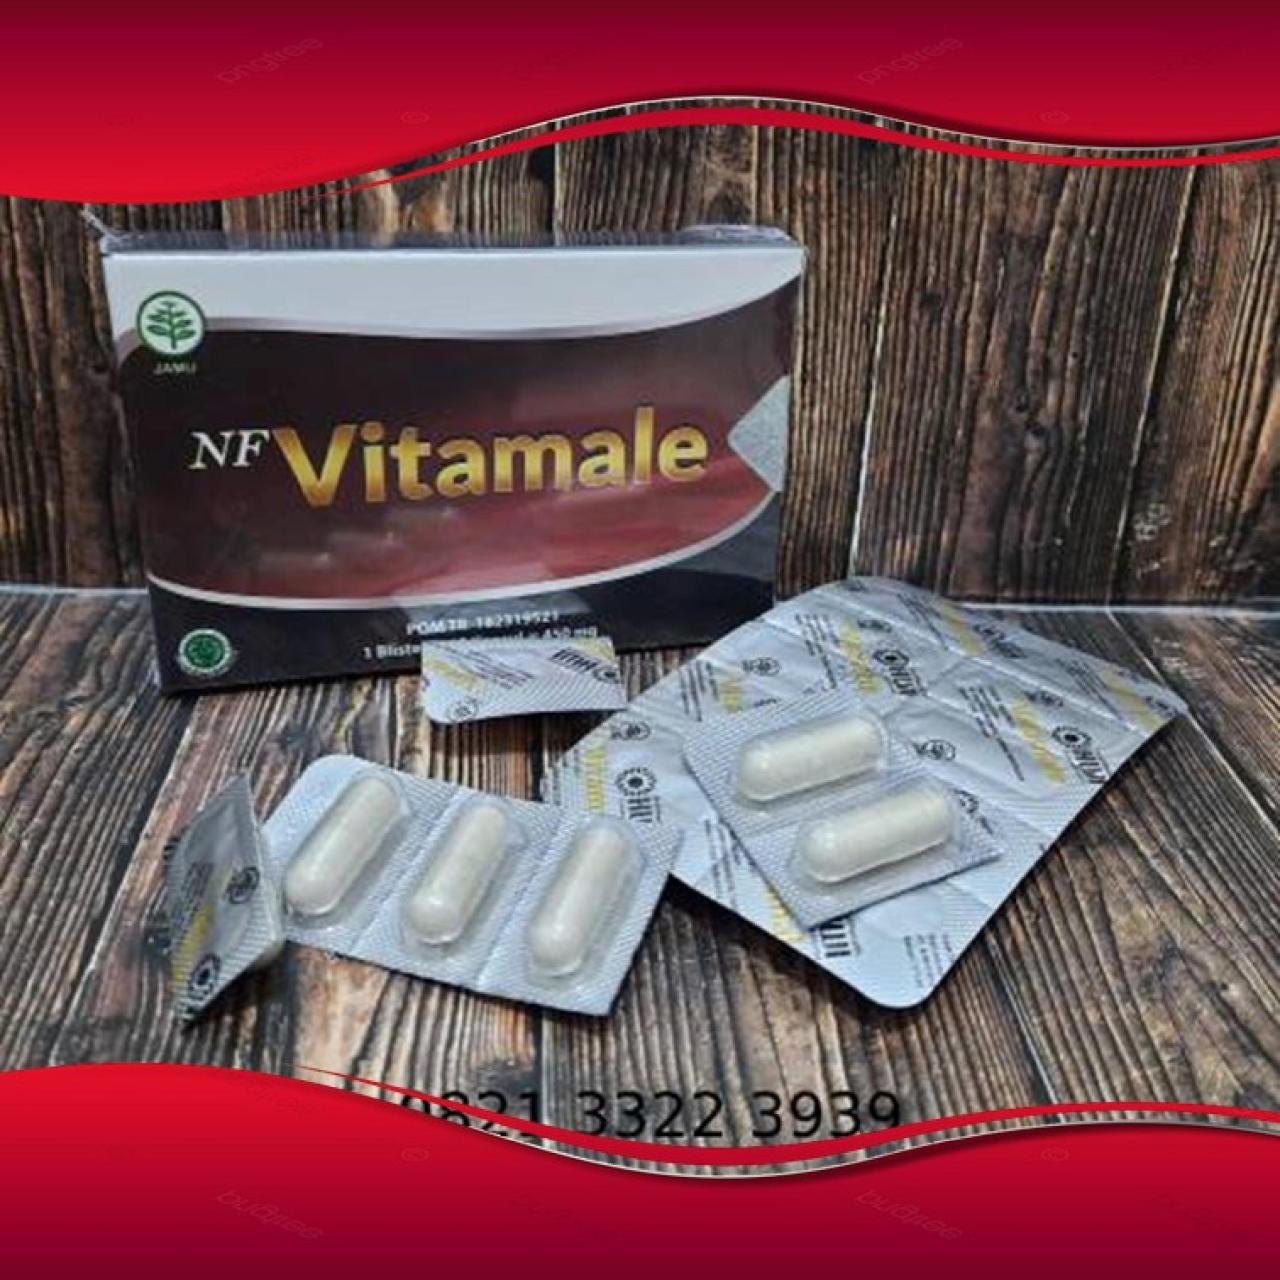 Vitamale pria obat kuat forex kapsul asli manfaat hammer viagra soloco pembesar sedia cialis titan hwi botol thor